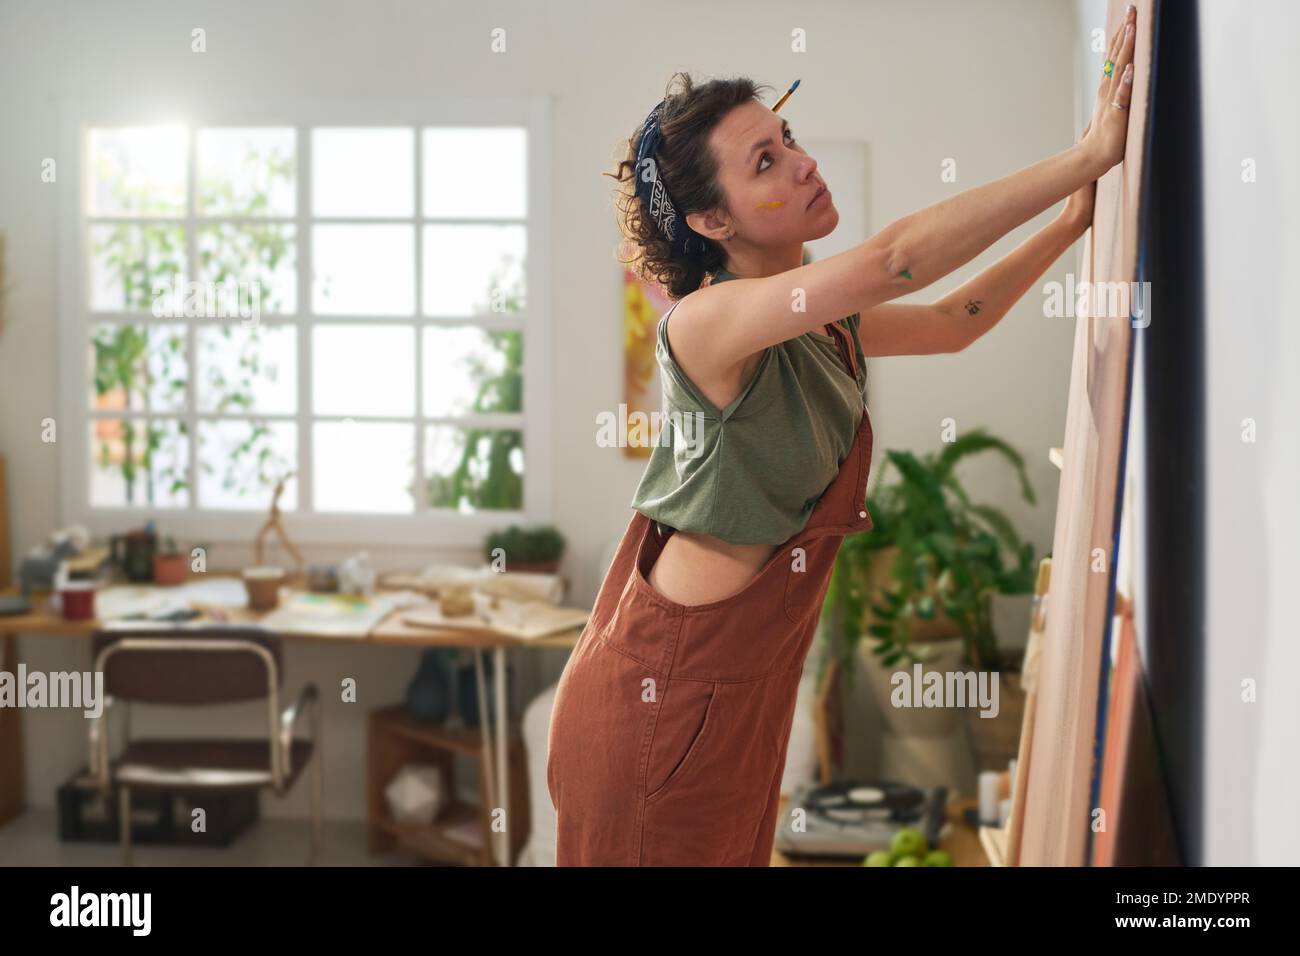 Junge kreative Malerin in Freizeitkleidung, die vor der Wand des Heimstudios steht und ein Panel für die Gestaltung neuer Kunstwerke vorbereitet Stockfoto